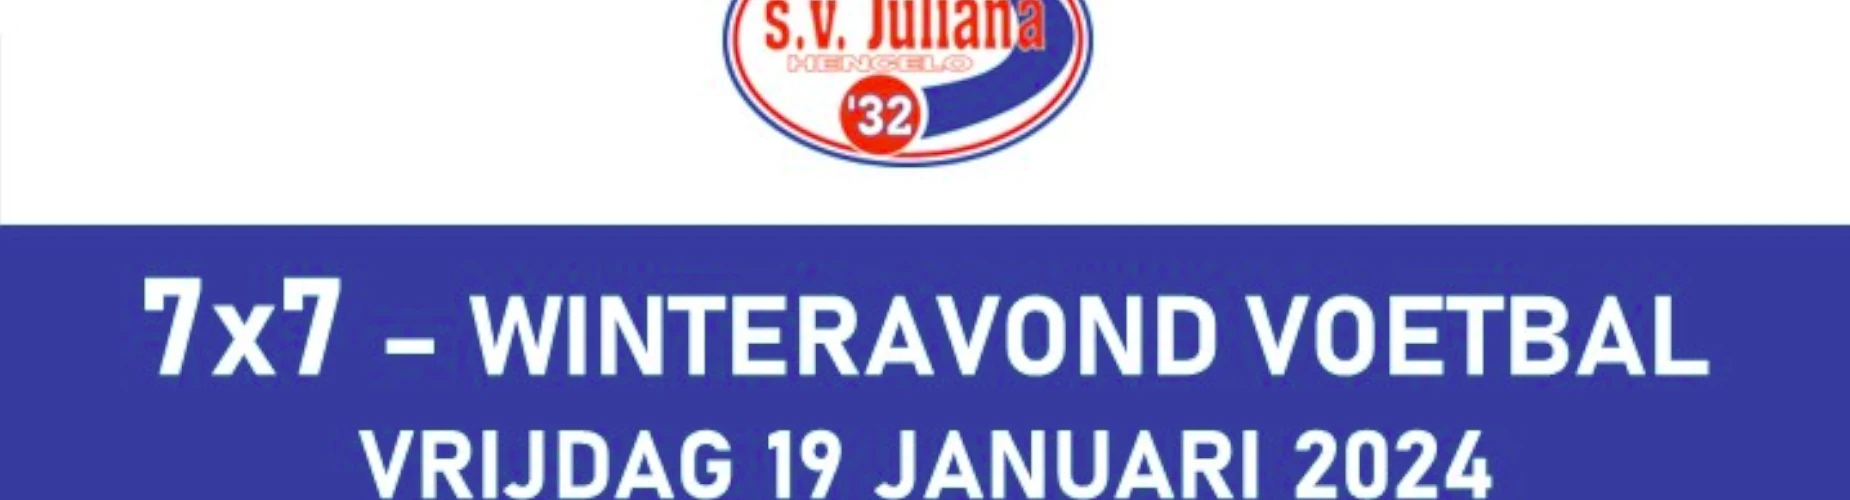 Banner - 7×7 – Winteravond Voetbal - s.v. Juliana ’32 - Hengelo